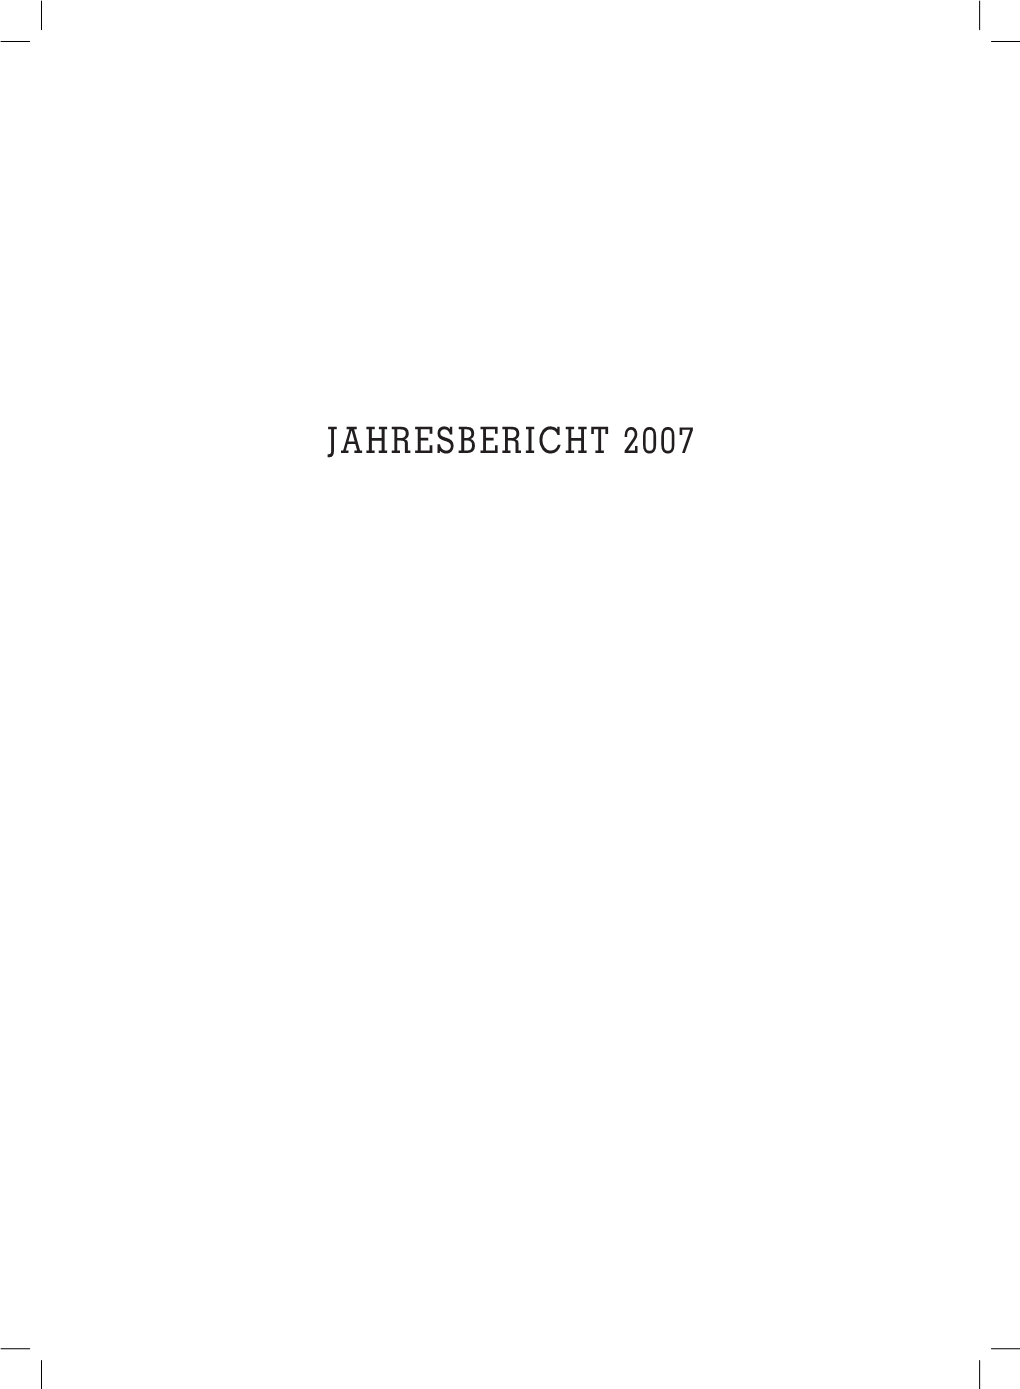 Jahresbericht 2007 2